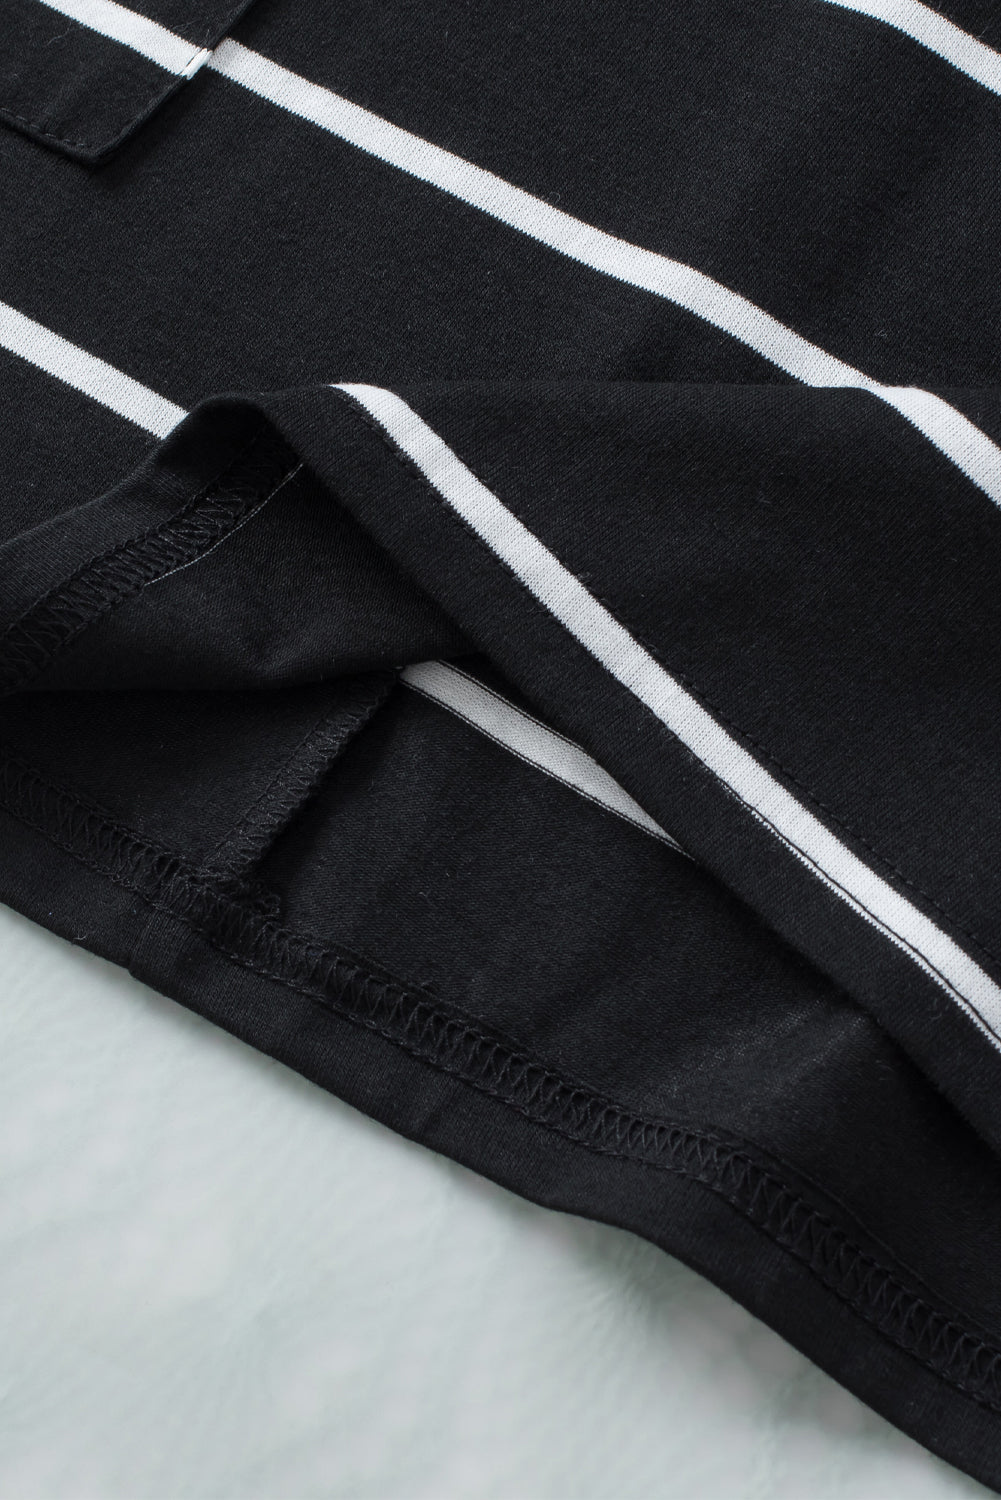 Schwarz gestreiftes, bedrucktes, kurzärmliges Tunika-Oberteil mit Seitentaschen